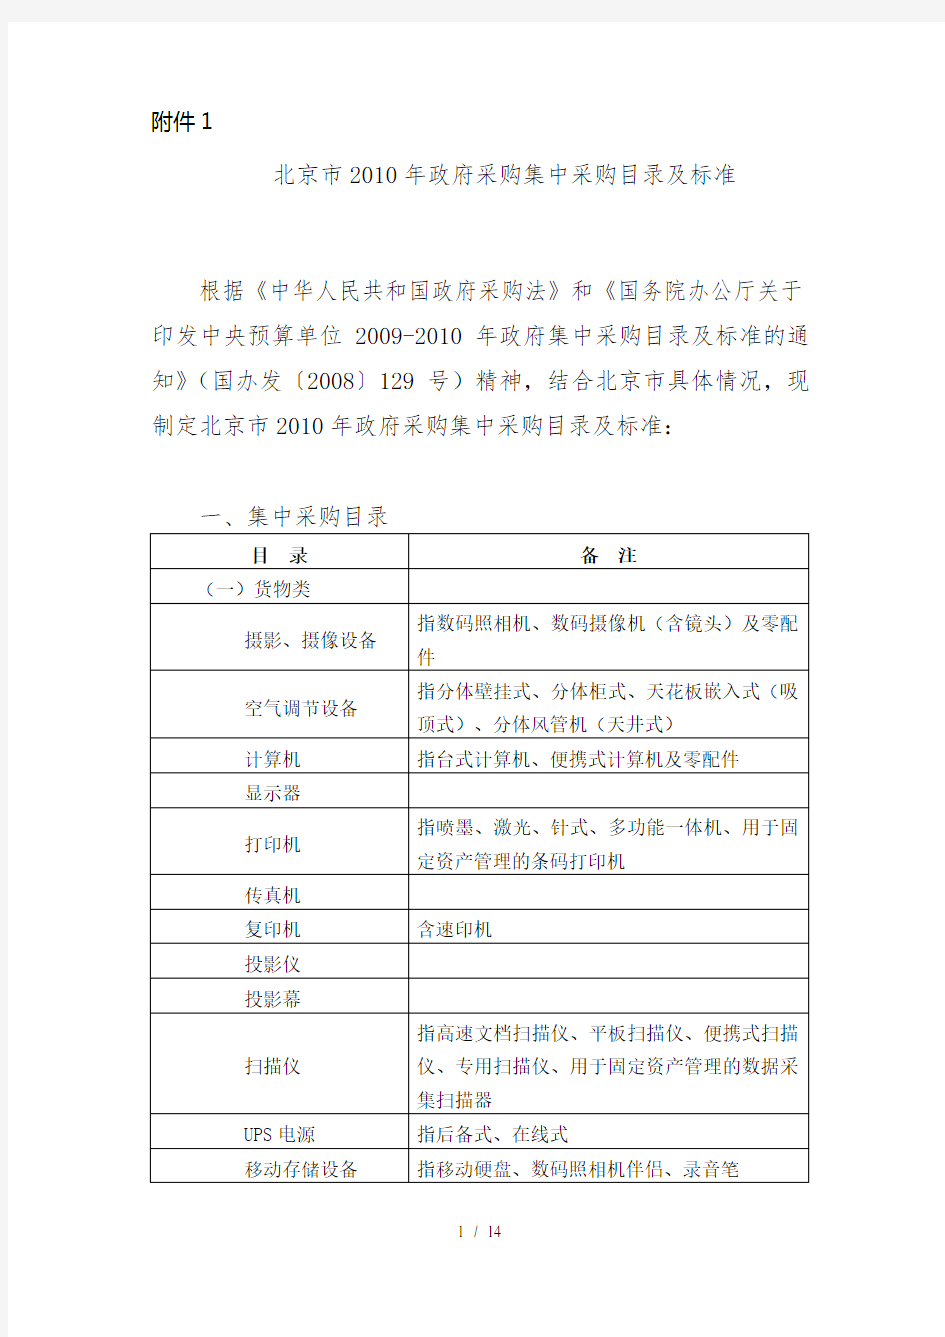 北京市年政府采购目录及标准